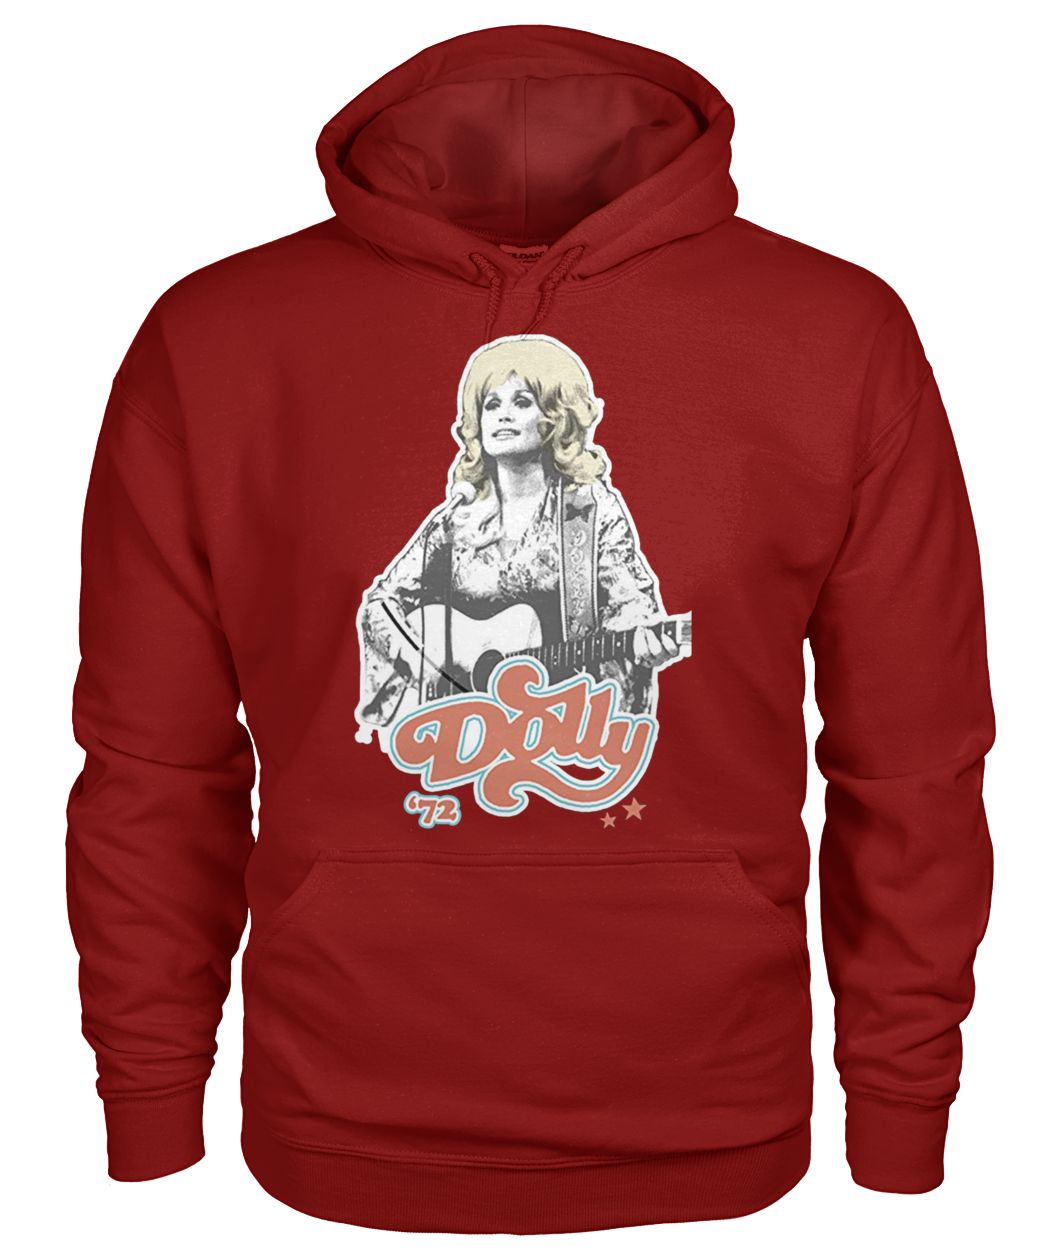 Dolly parton '72 gildan hoodie